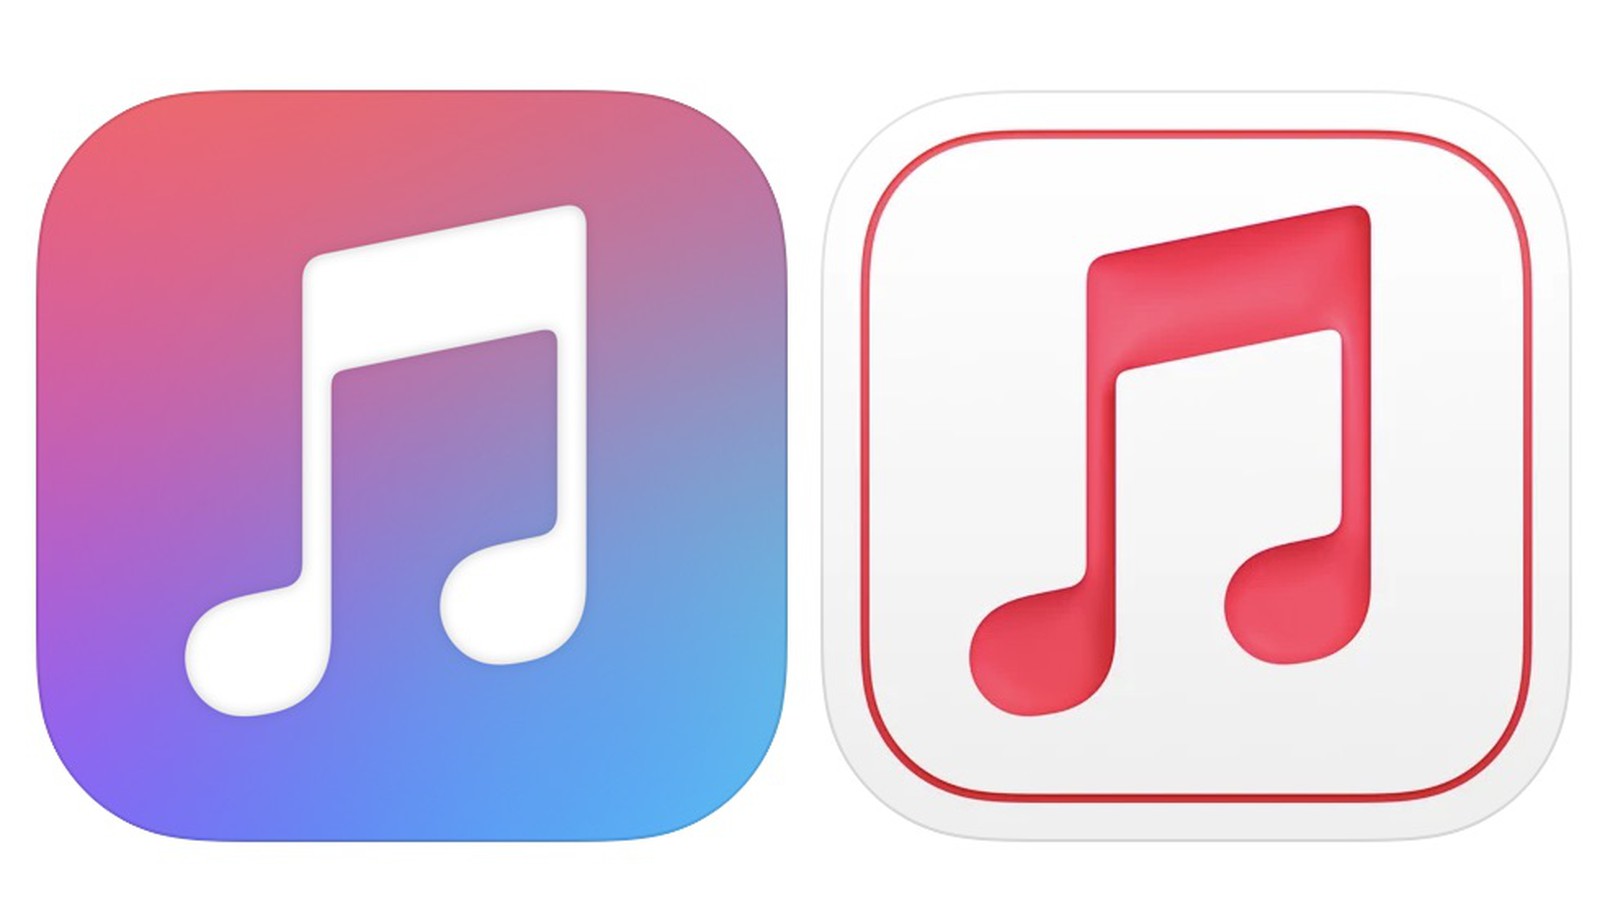 iOS 15, il design di due icone forse anticipa le novità in arrivo